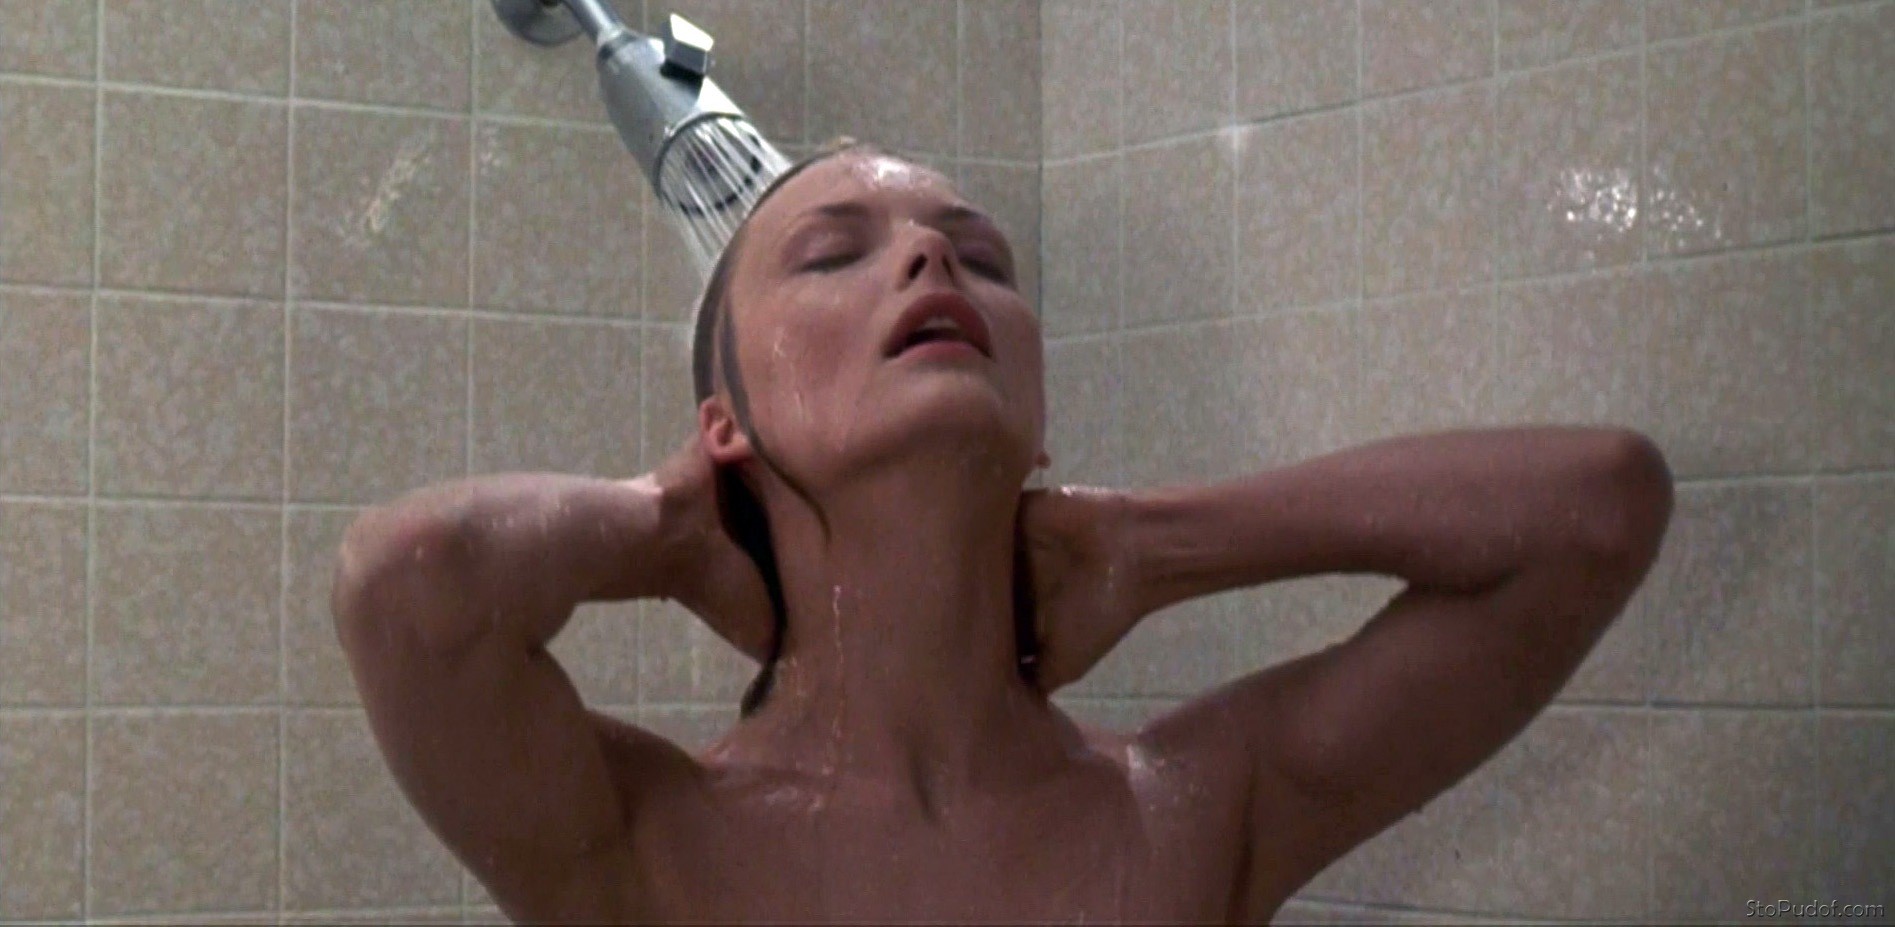 leaked naked pictures Michelle Pfeiffer - UkPhotoSafari